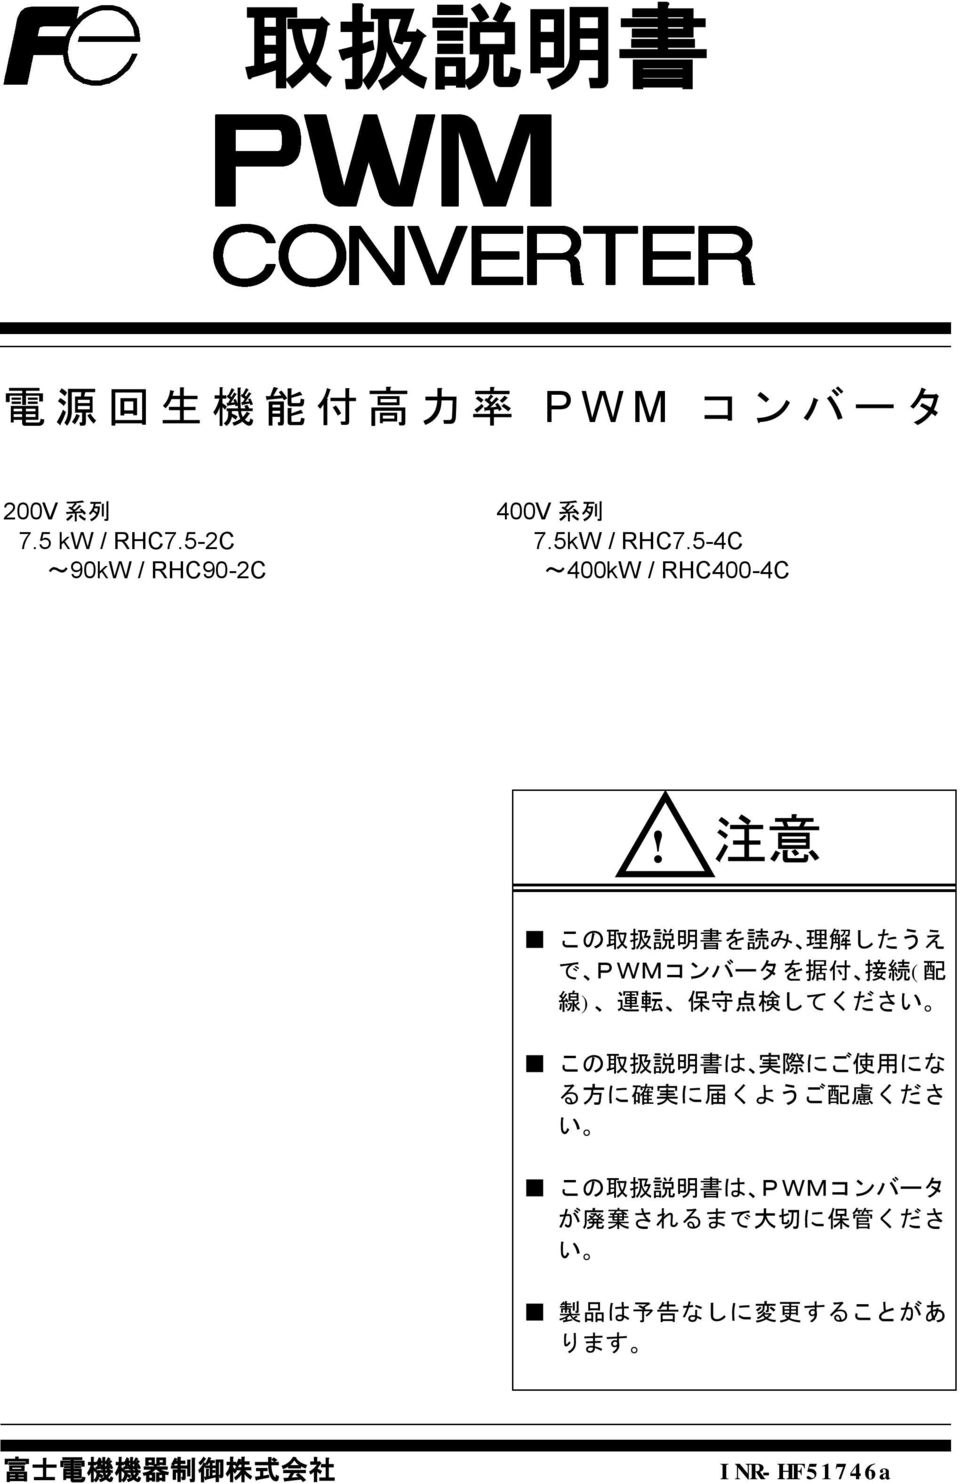 注 意 この 取 扱 説 明 書 を 読 み 理 解 したうえ で PWMコンバータを 据 付 接 続 ( 配 線 ) 運 転 保 守 点 検 してください この 取 扱 説 明 書 は